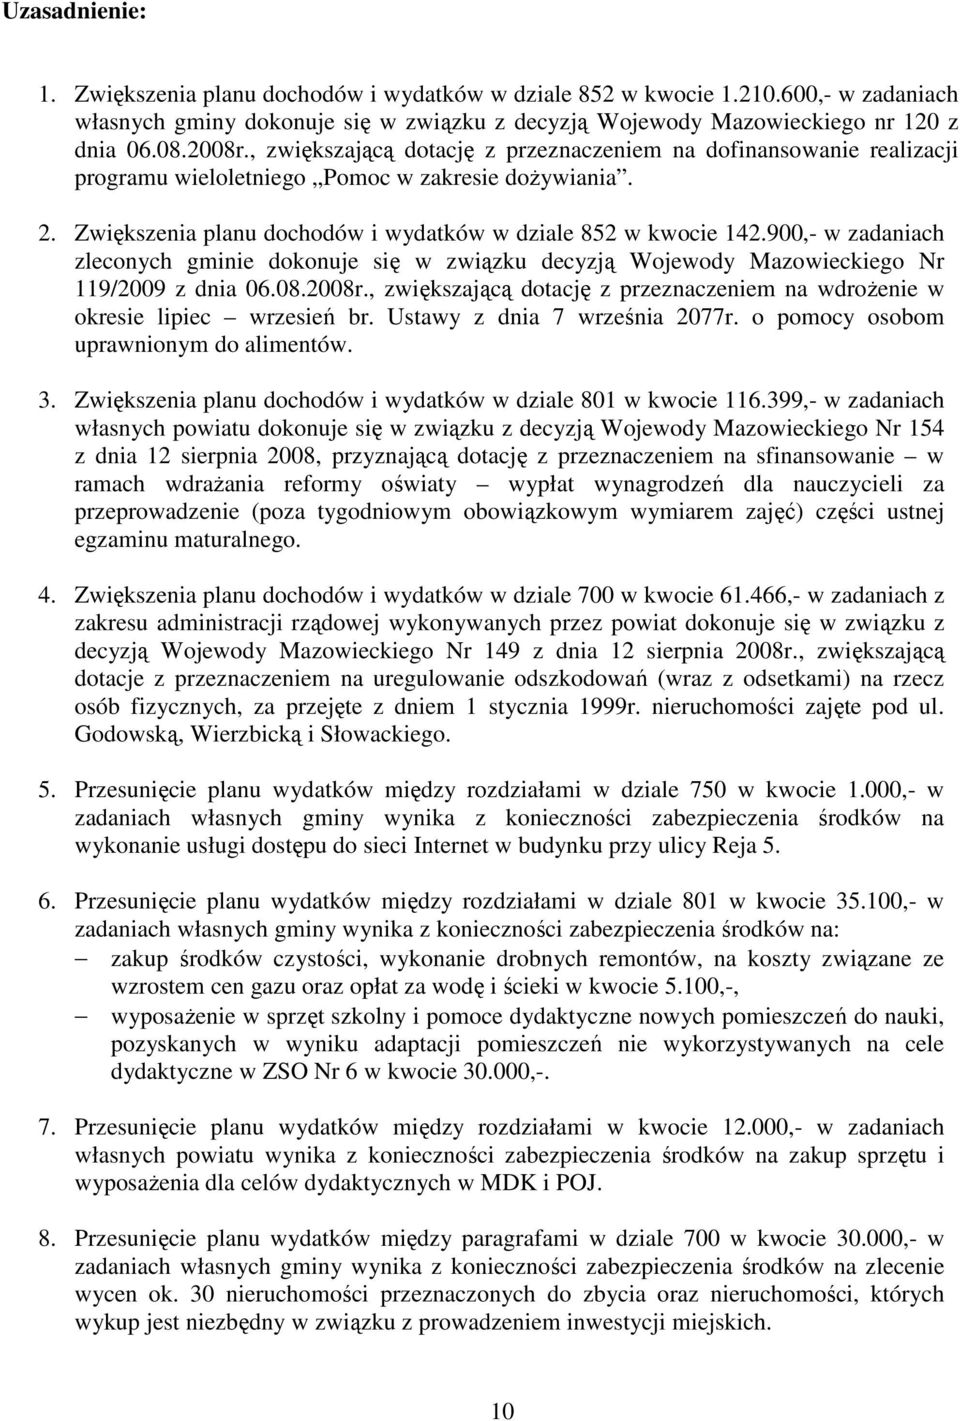 900,- w zadaniach zleconych gminie dokonuje się w związku decyzją Wojewody Mazowieckiego Nr 119/2009 z dnia 06.08.2008r.